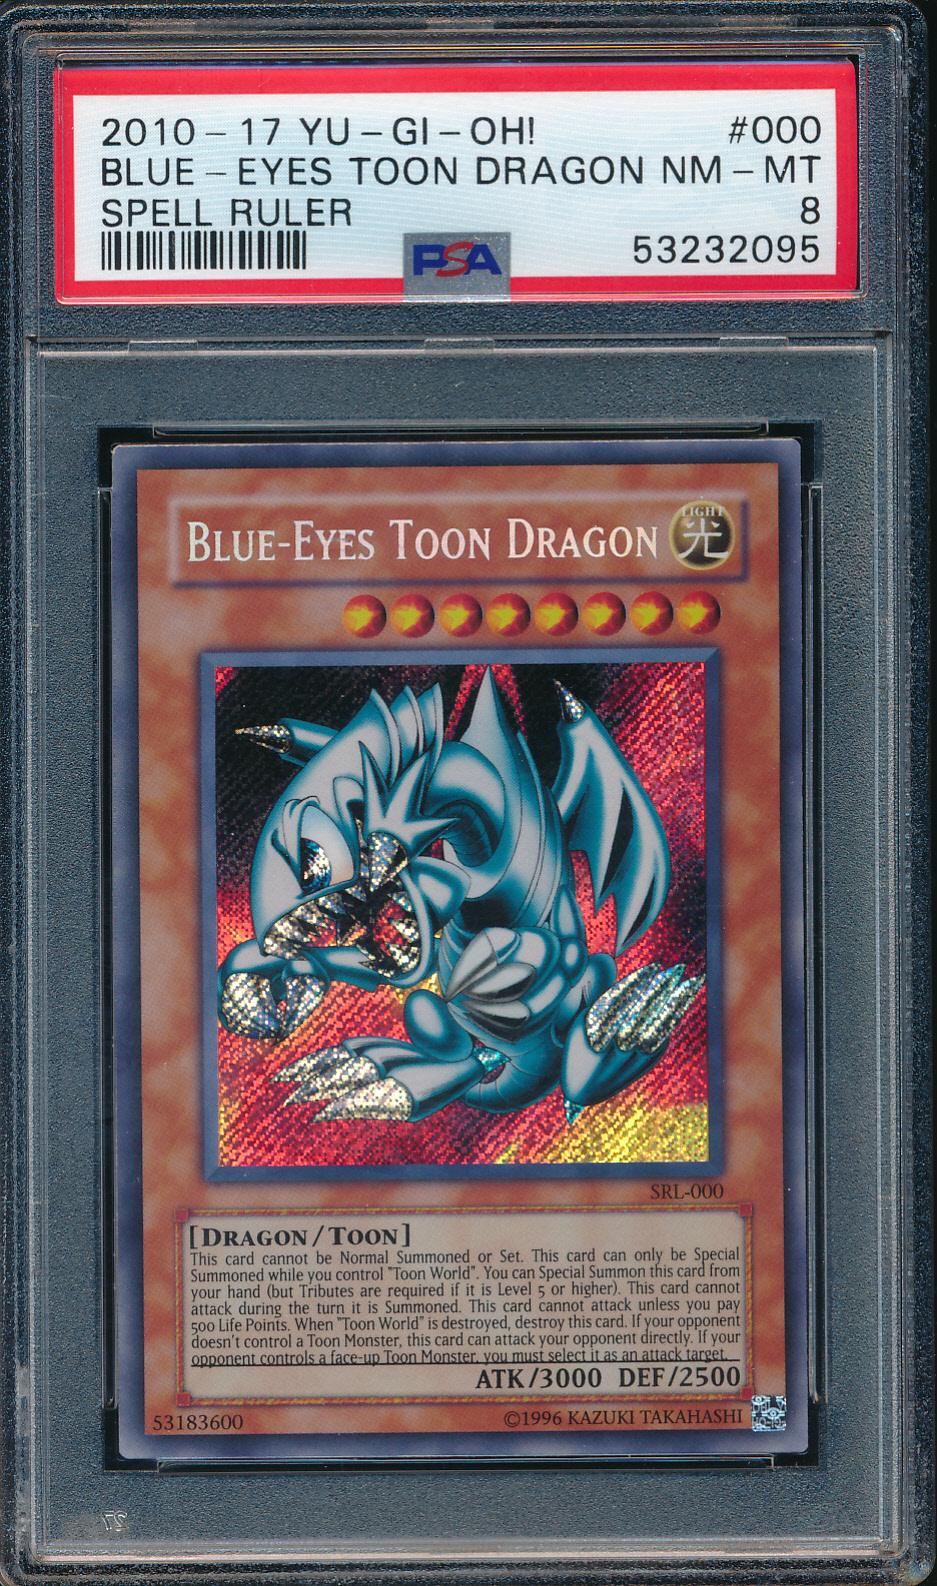 201-17 Yu-Gi-Oh Blue Eyes Toon Dragon Spell Ruler PSA 8